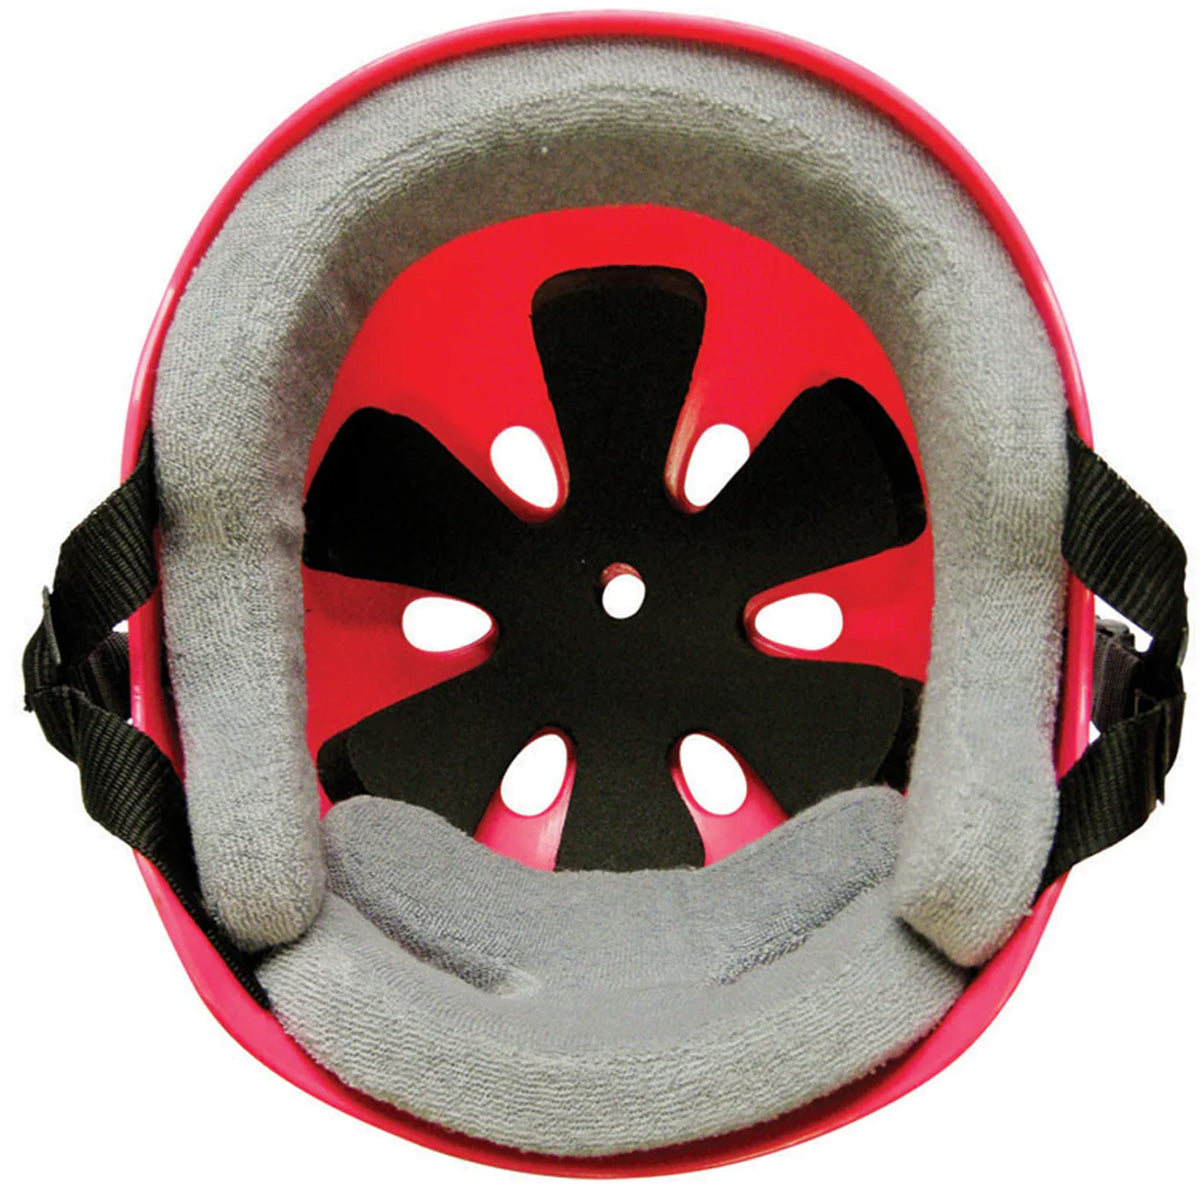 Triple Eight Sweatsaver Helmet - Baja Teal image 2